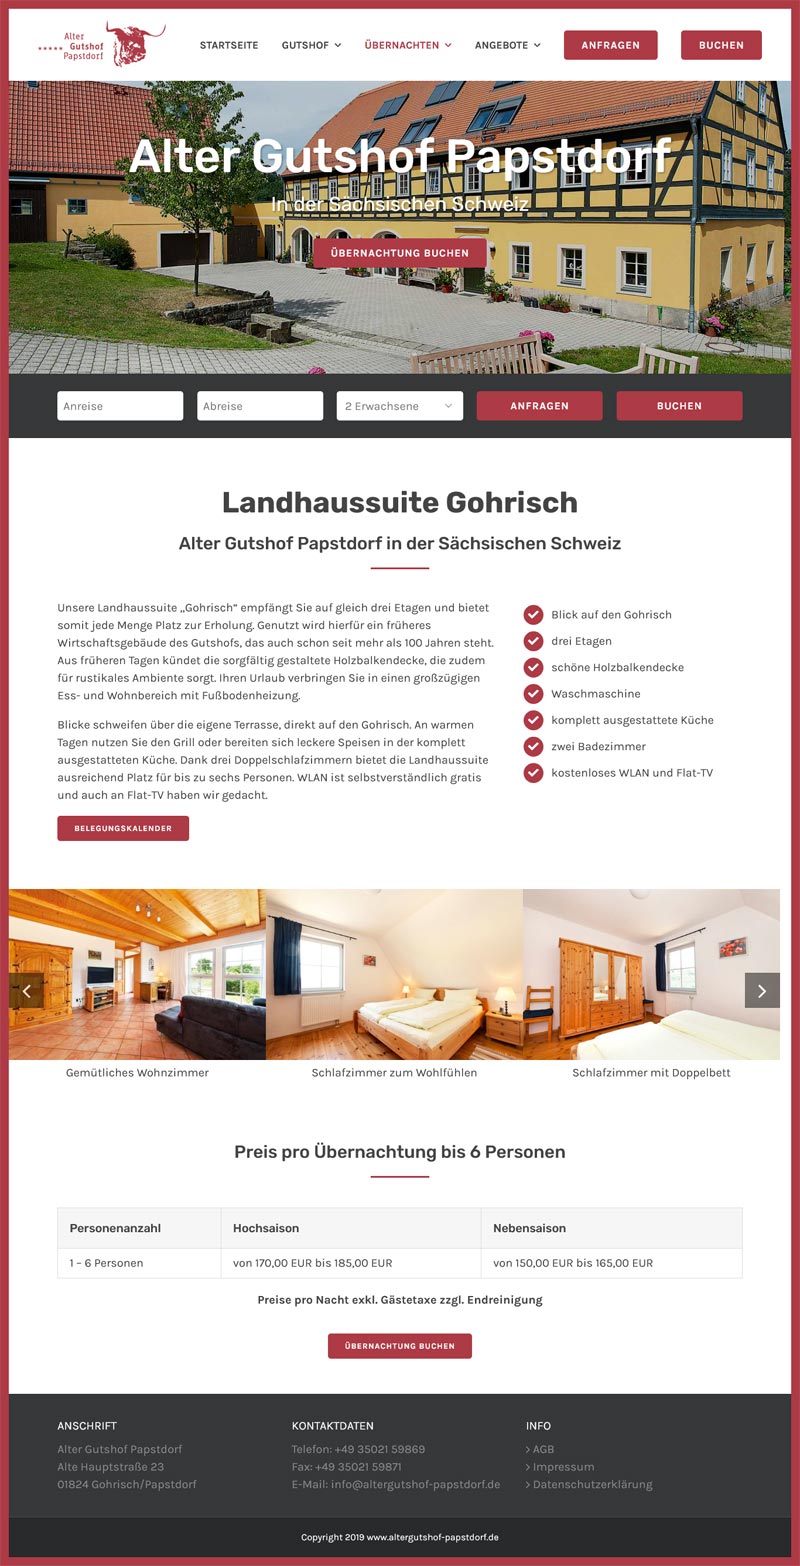 Alter Gutshof Papstdorf Screenshot Fullsize Unterseite